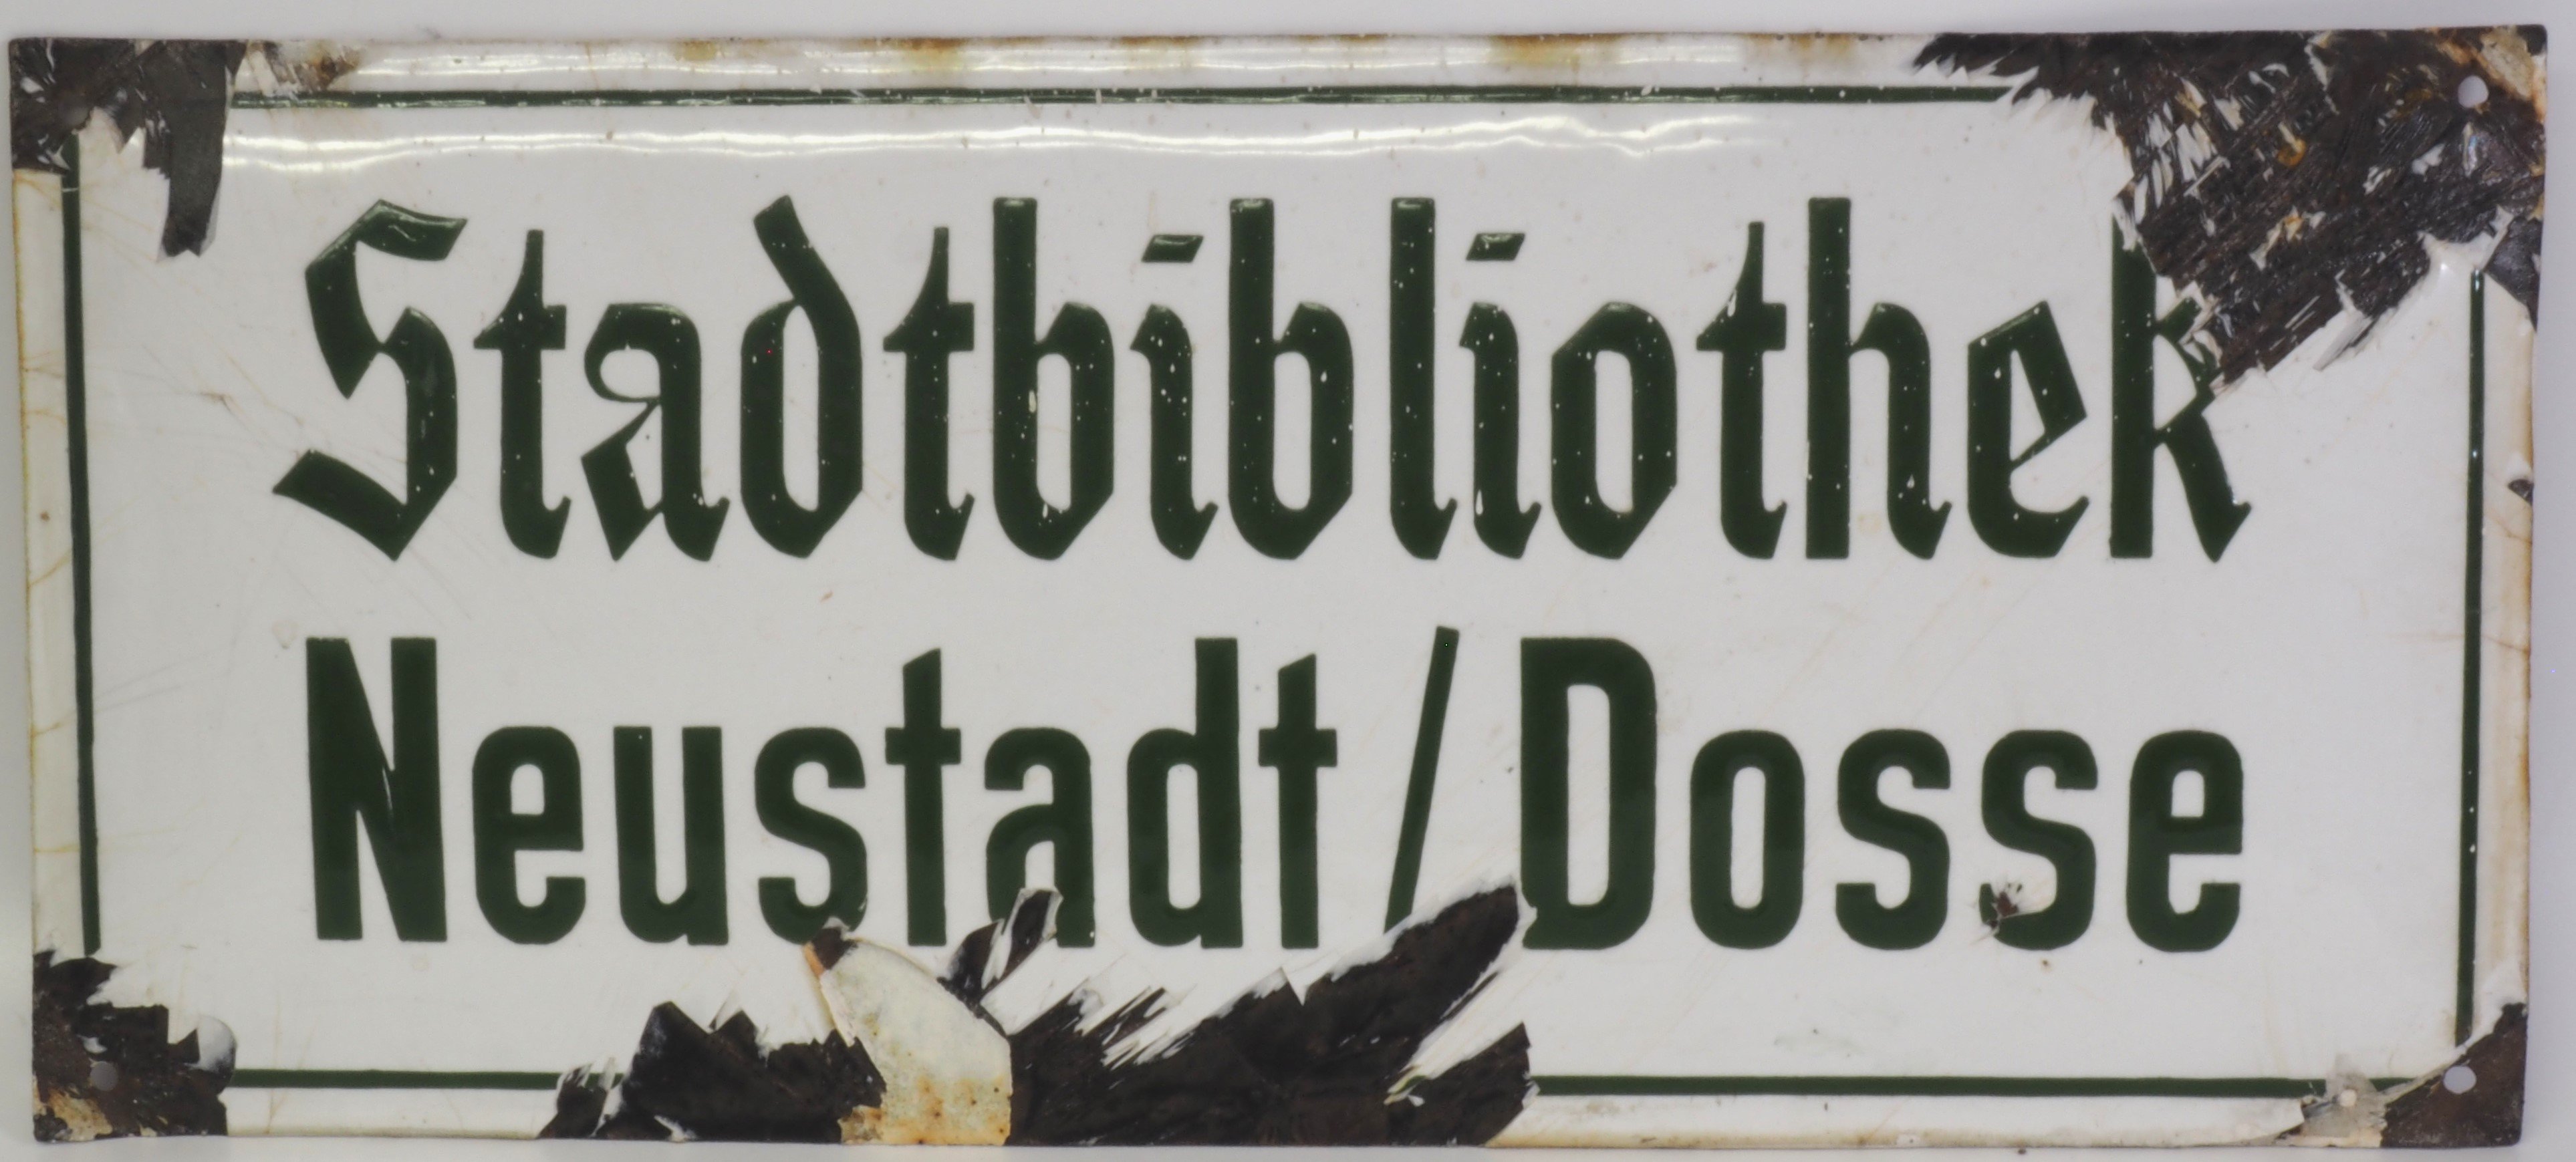 Schild: Stadtbibliothek Neustadt/Dosse (DDR Geschichtsmuseum im Dokumentationszentrum Perleberg CC BY-SA)